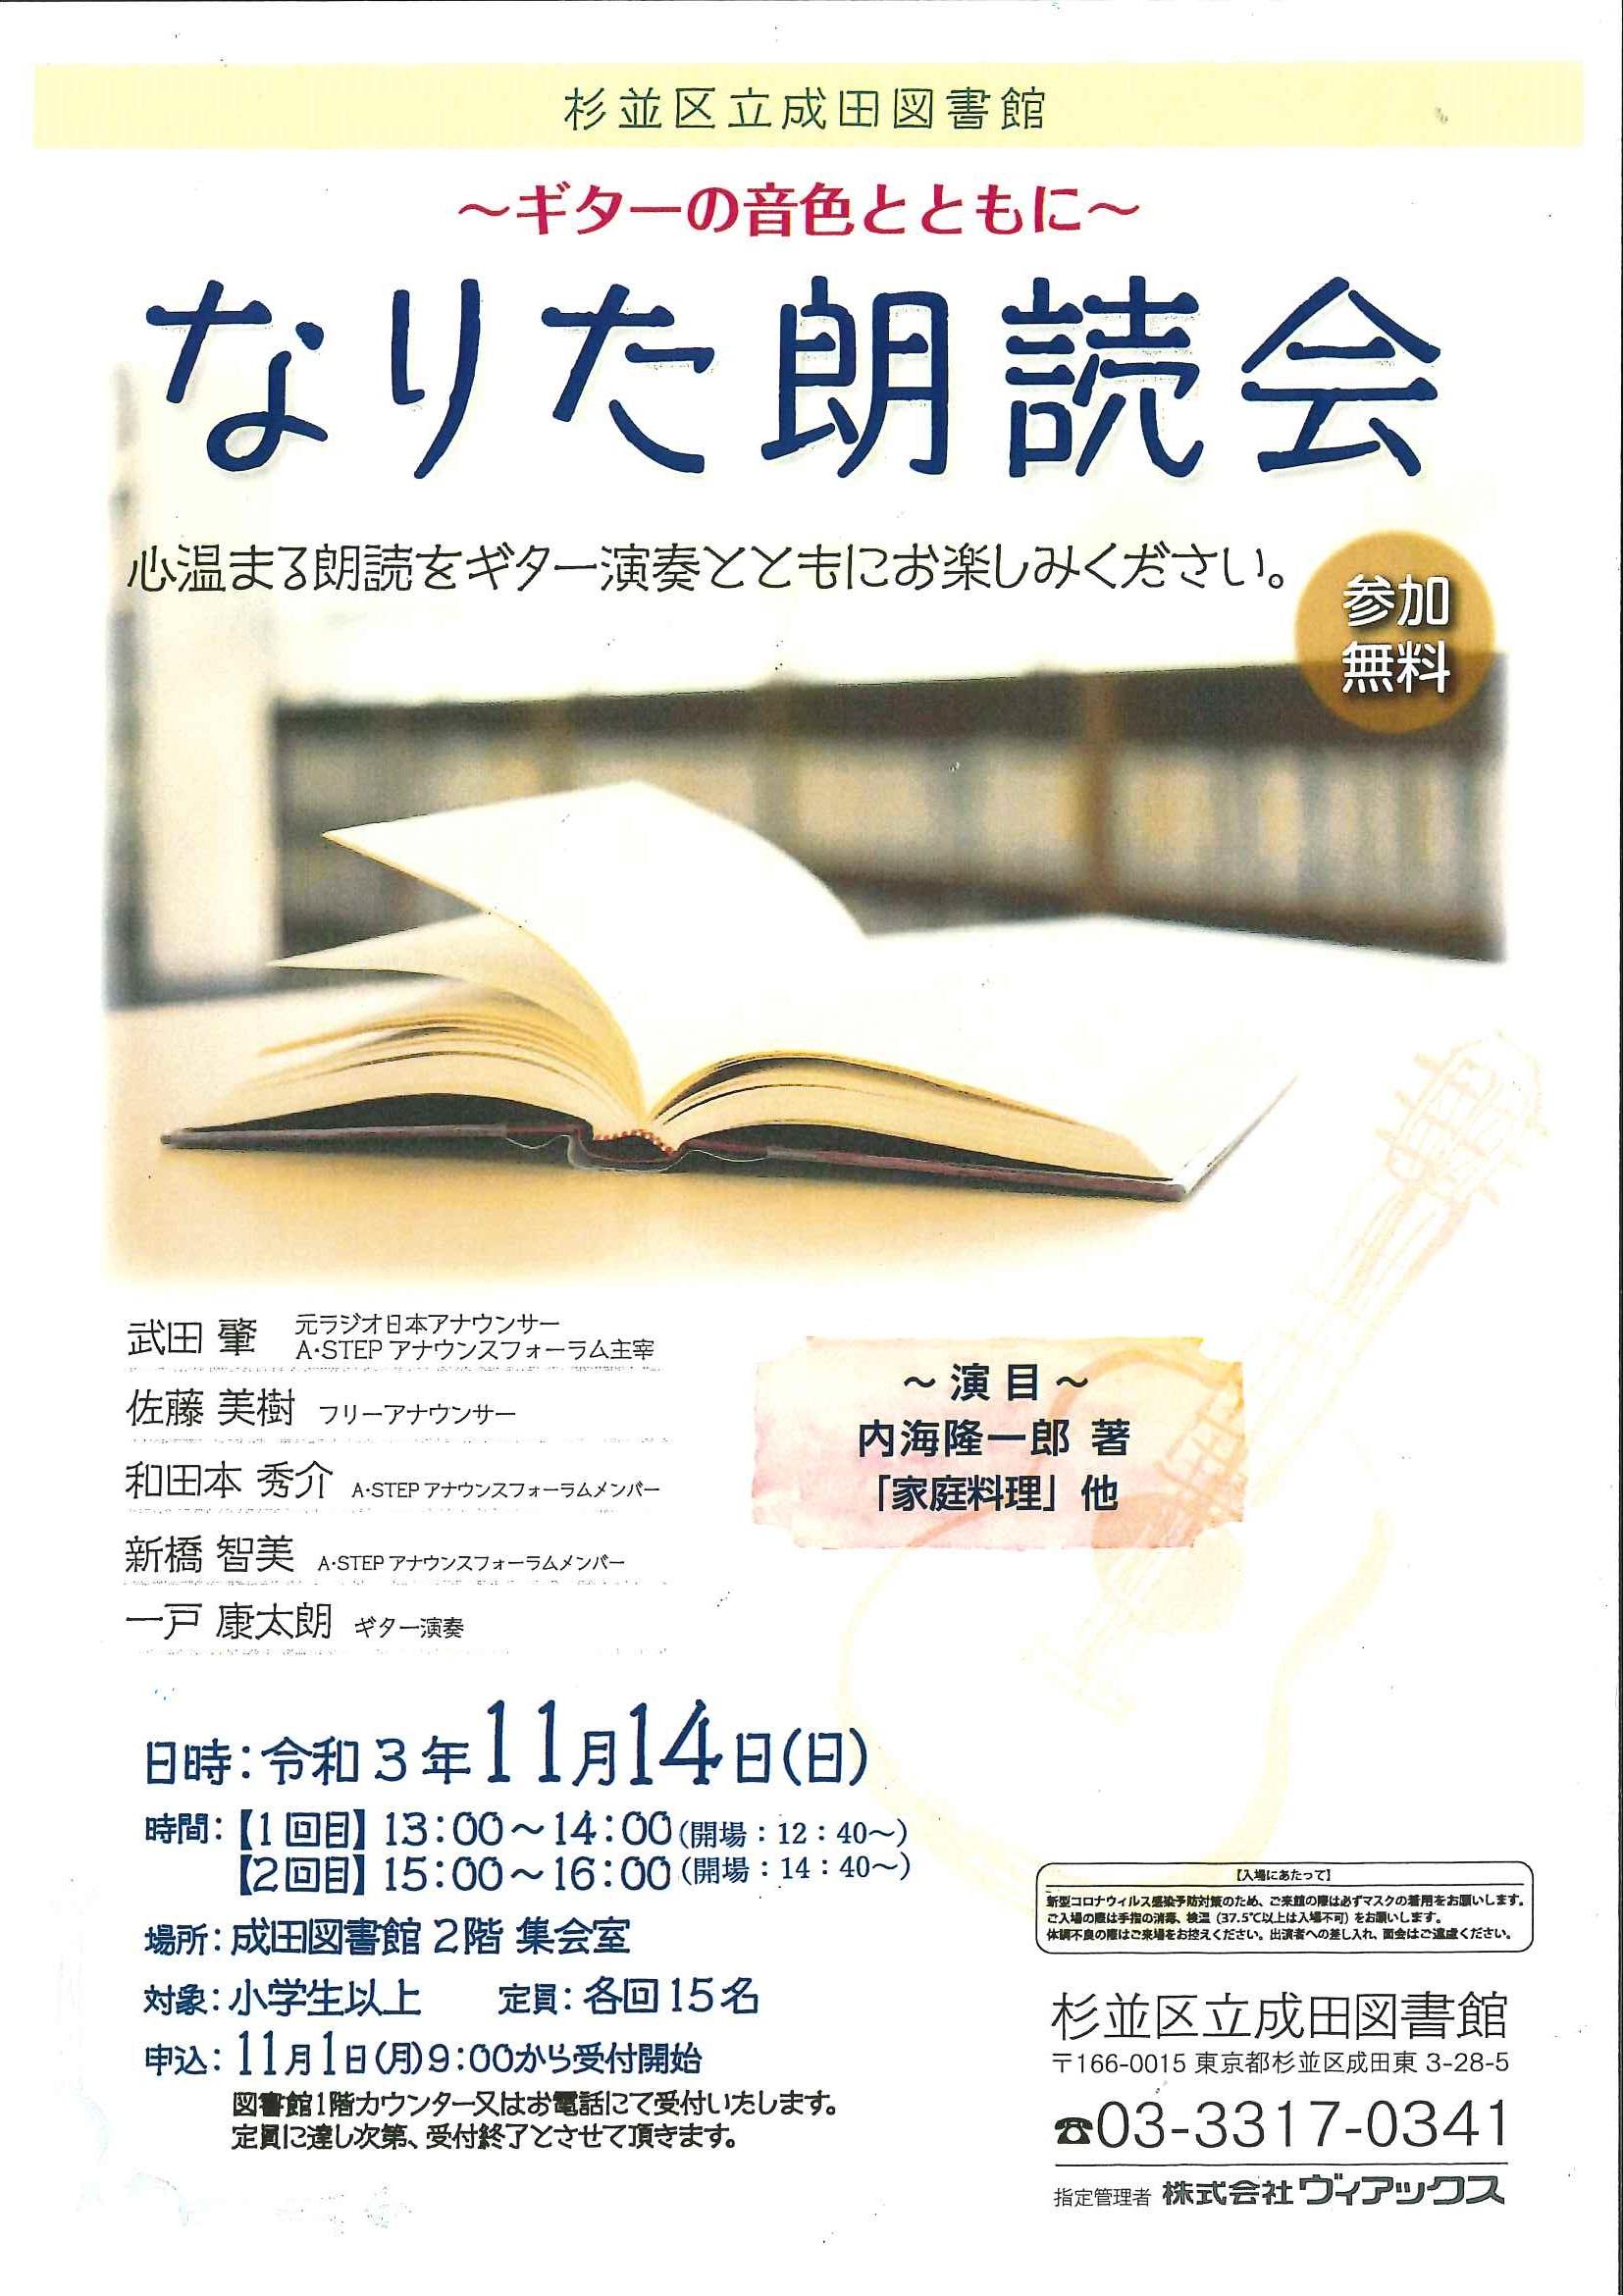 https://www.library.city.suginami.tokyo.jp/mt_files_news/20211014_06_roudokuposuta.jpg